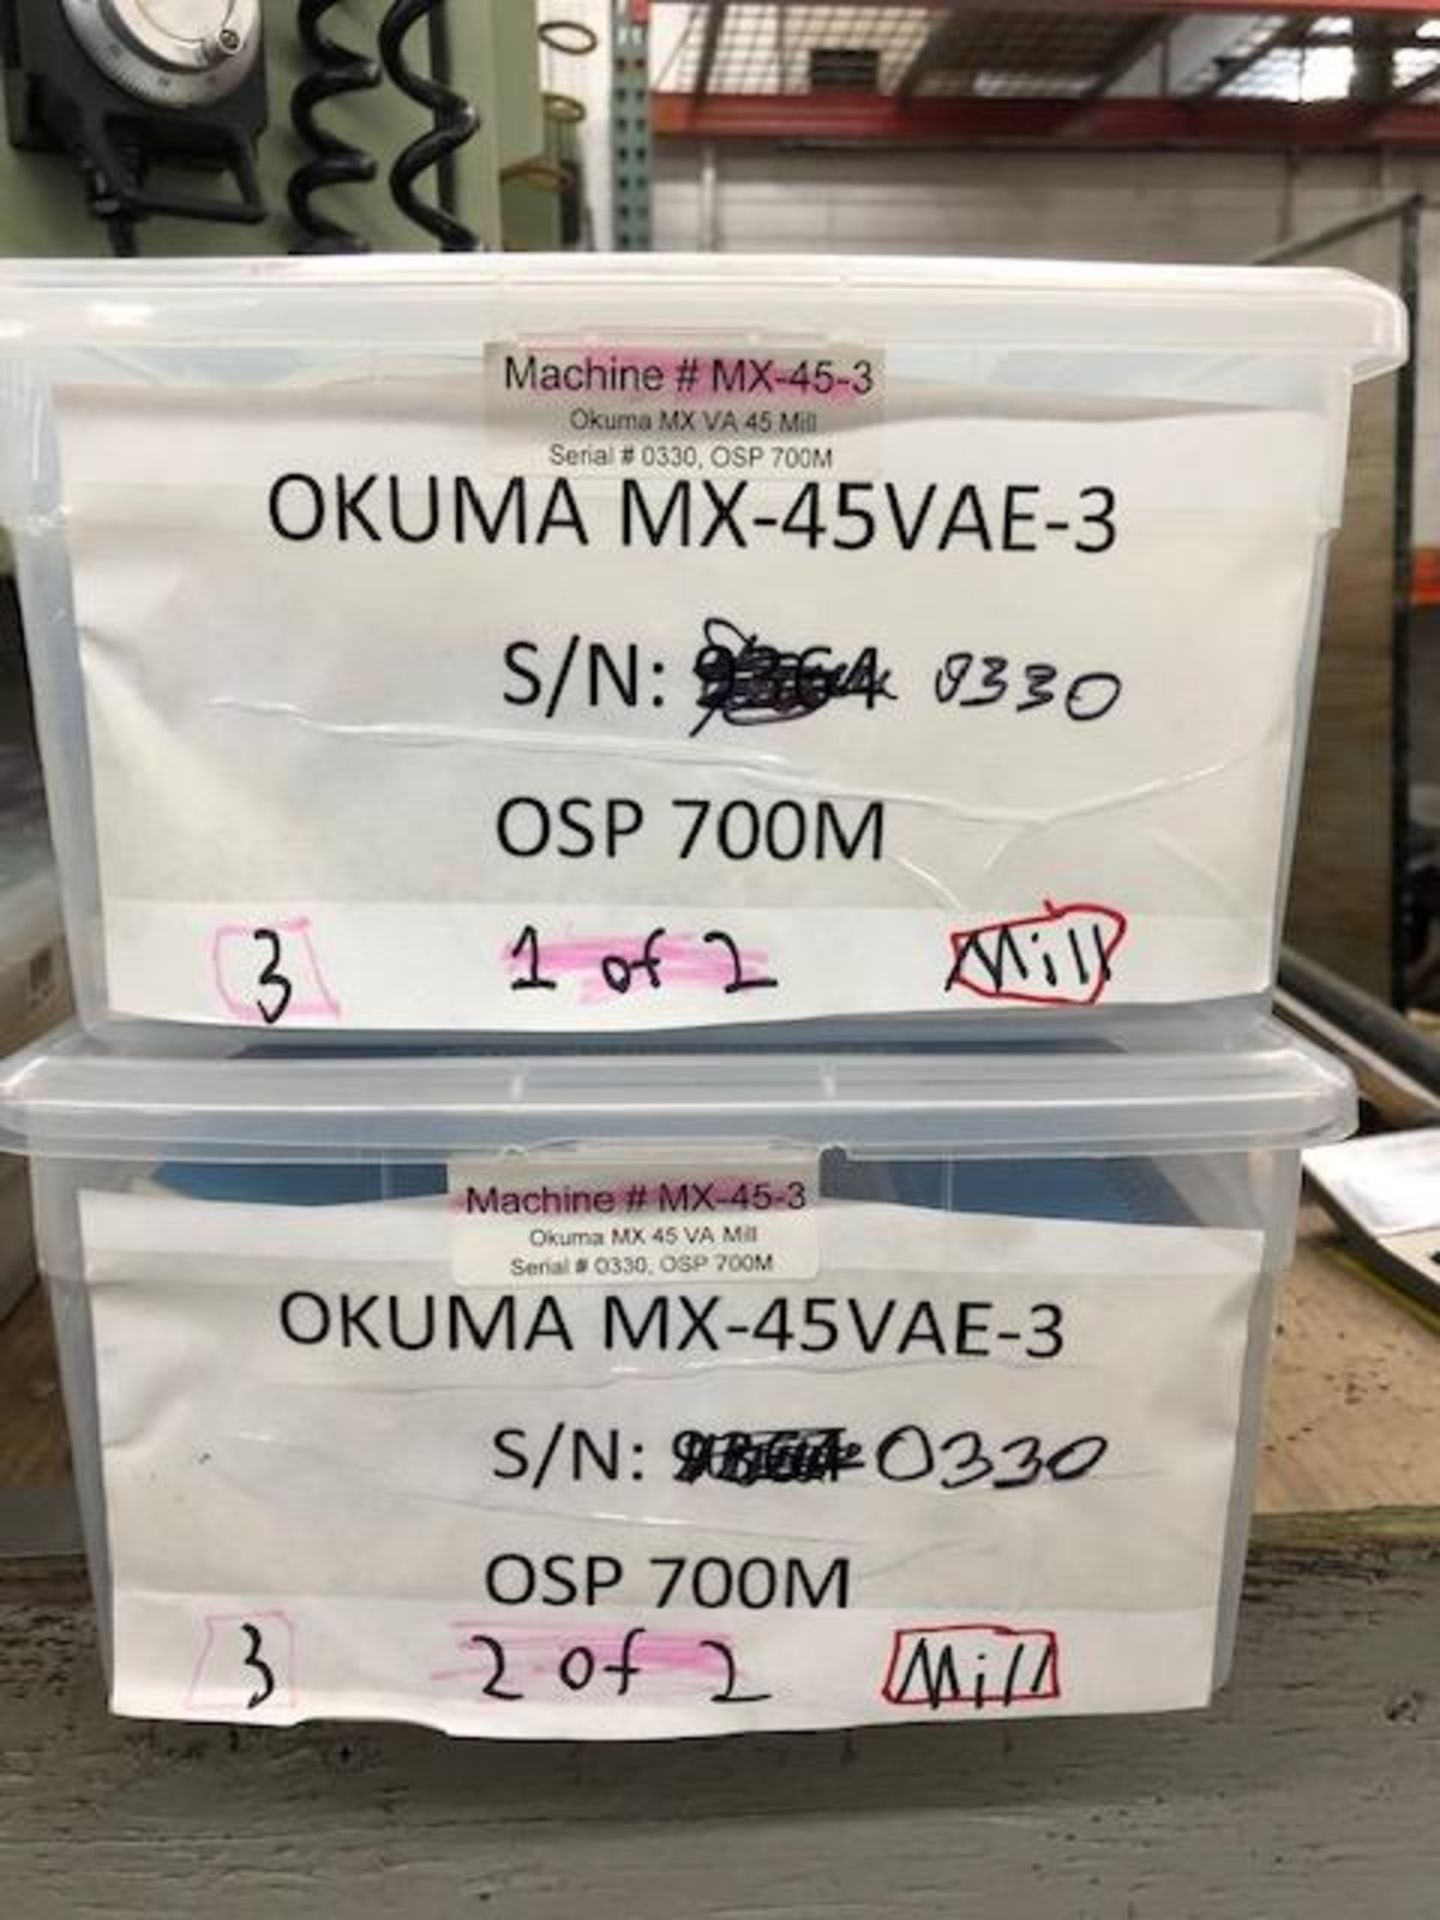 1997 OKUMA MODEL MX-45VA CNC VERTICAL MACHINING CENTER: S/N 0330; WITH OKUMA OSP 700M CONTROL, 20 - Image 7 of 7